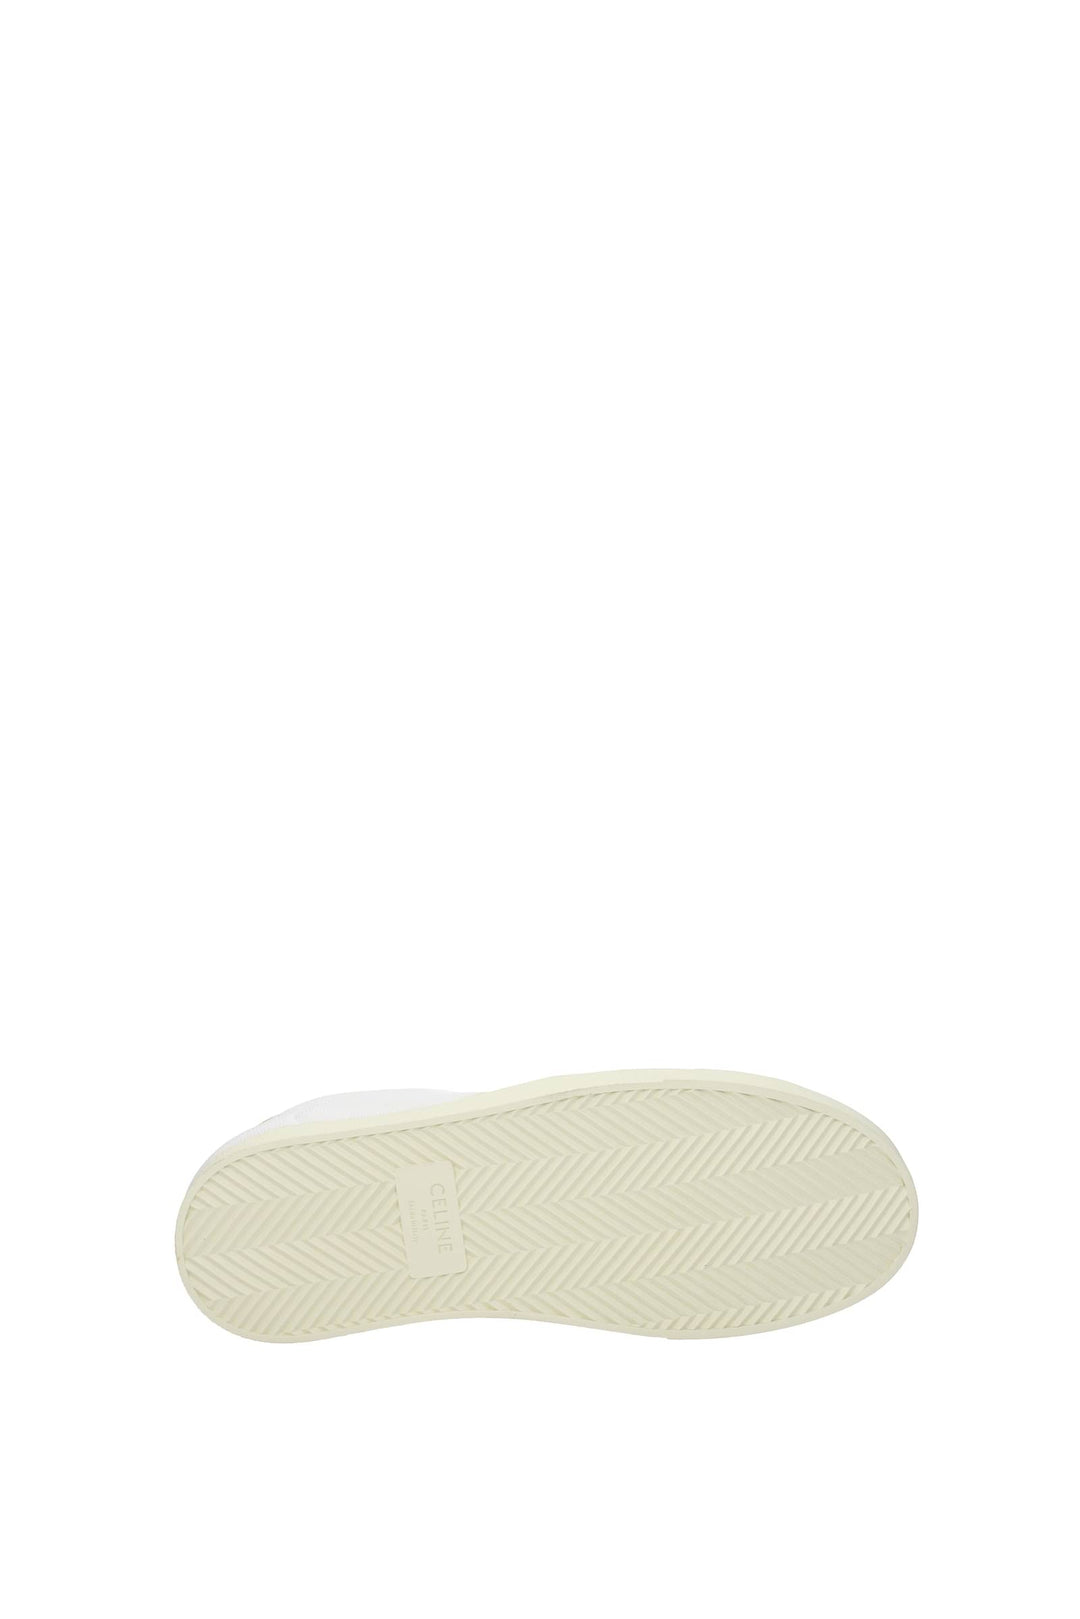 Sneakers Tessuto Bianco Giallo - Celine - Uomo